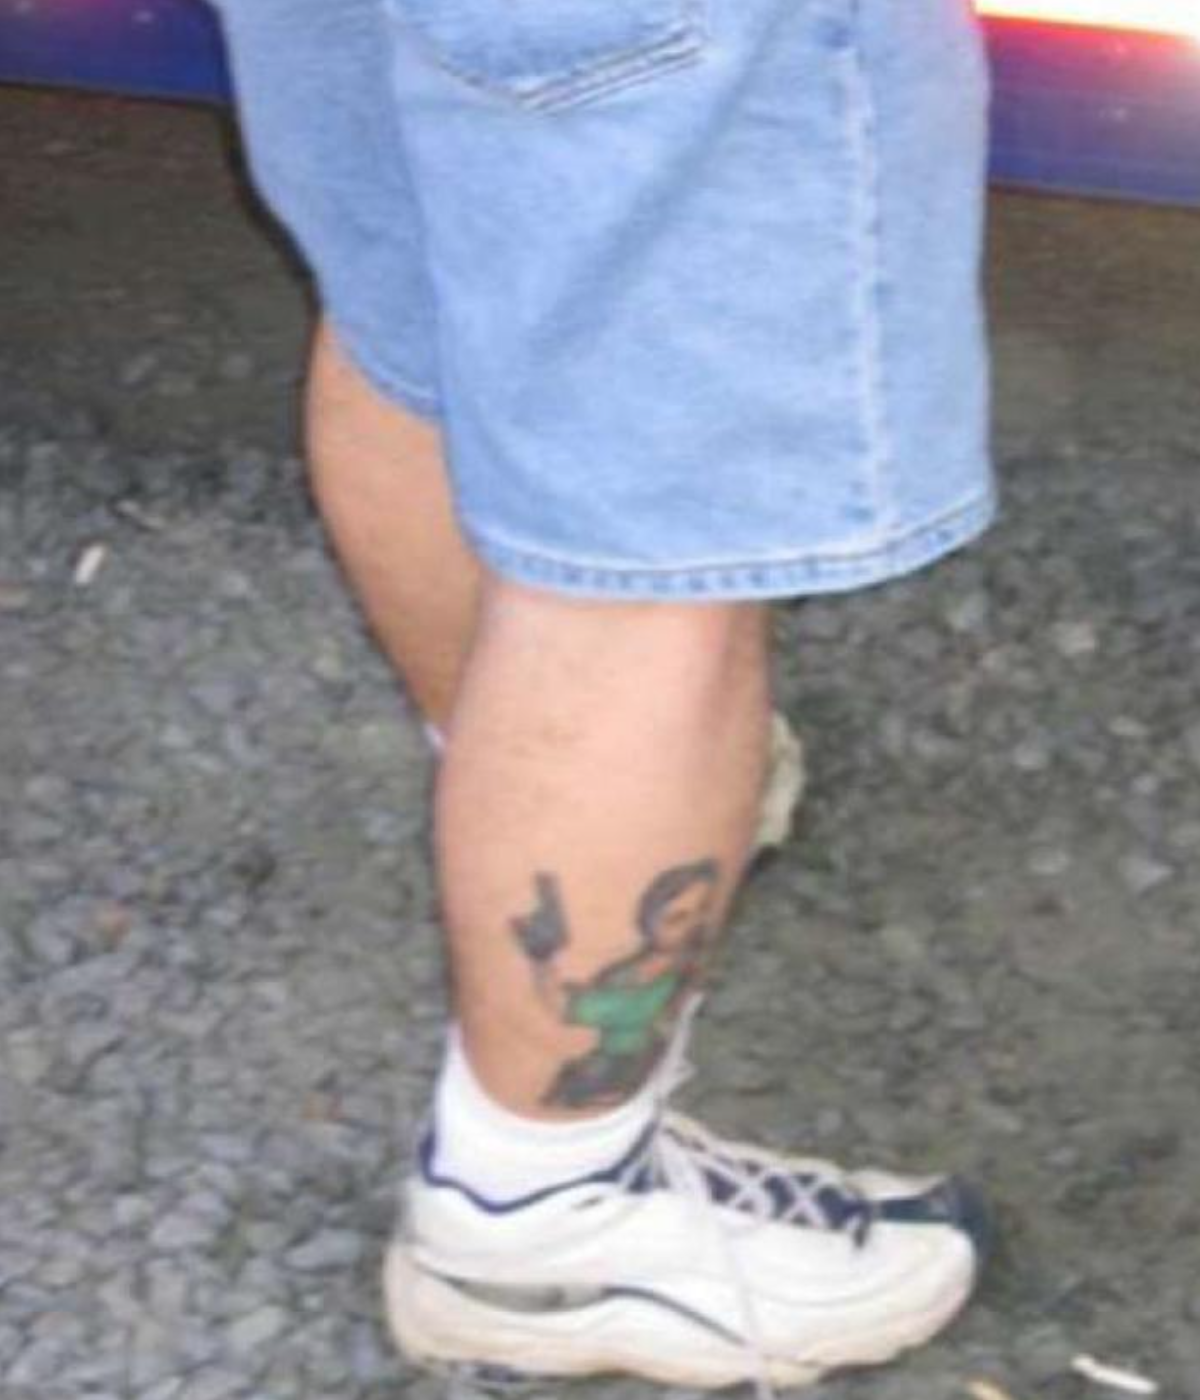 terrible gamer tattoos human leg